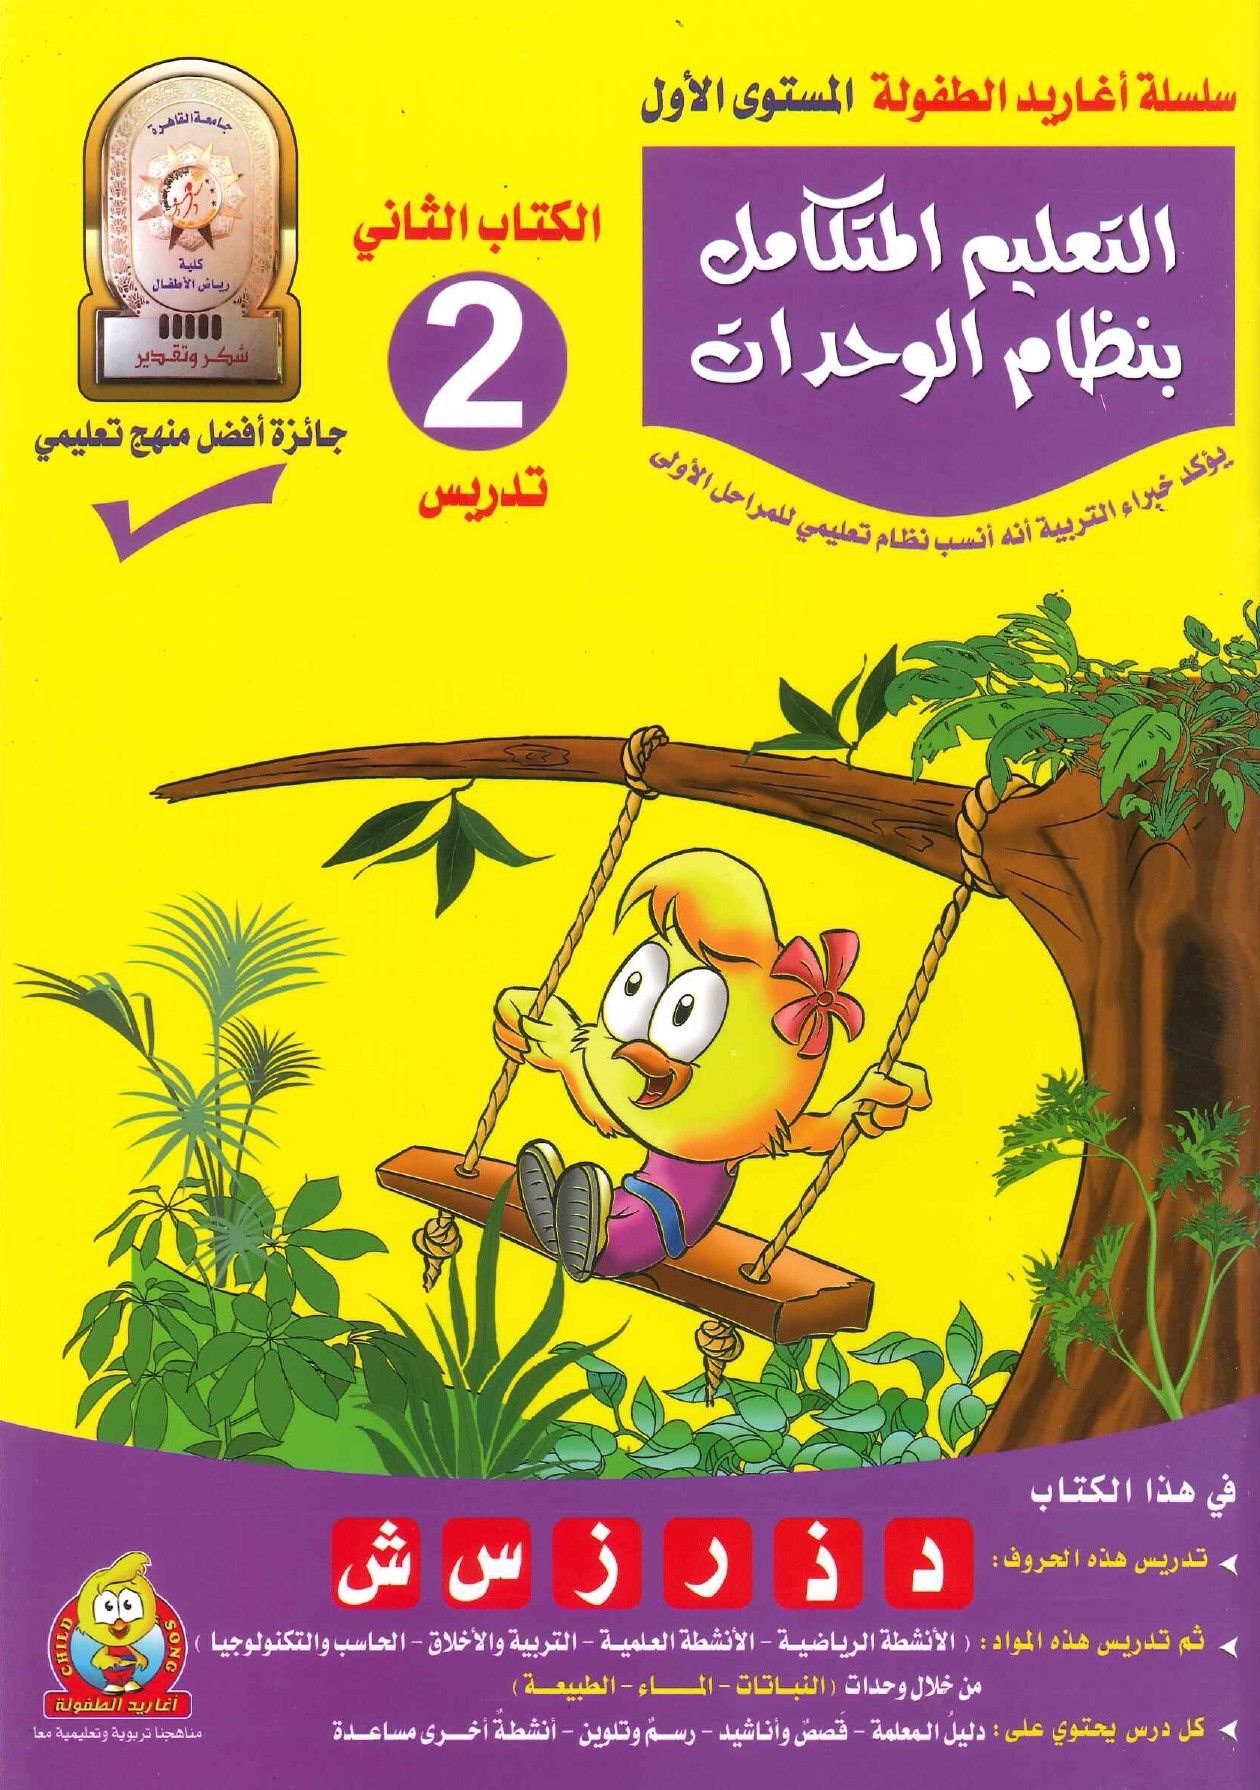 سلسلة أغاريد الطفولة المستوى الأول - التعليم المتكامل بنظام الوحدات - الكتاب 2